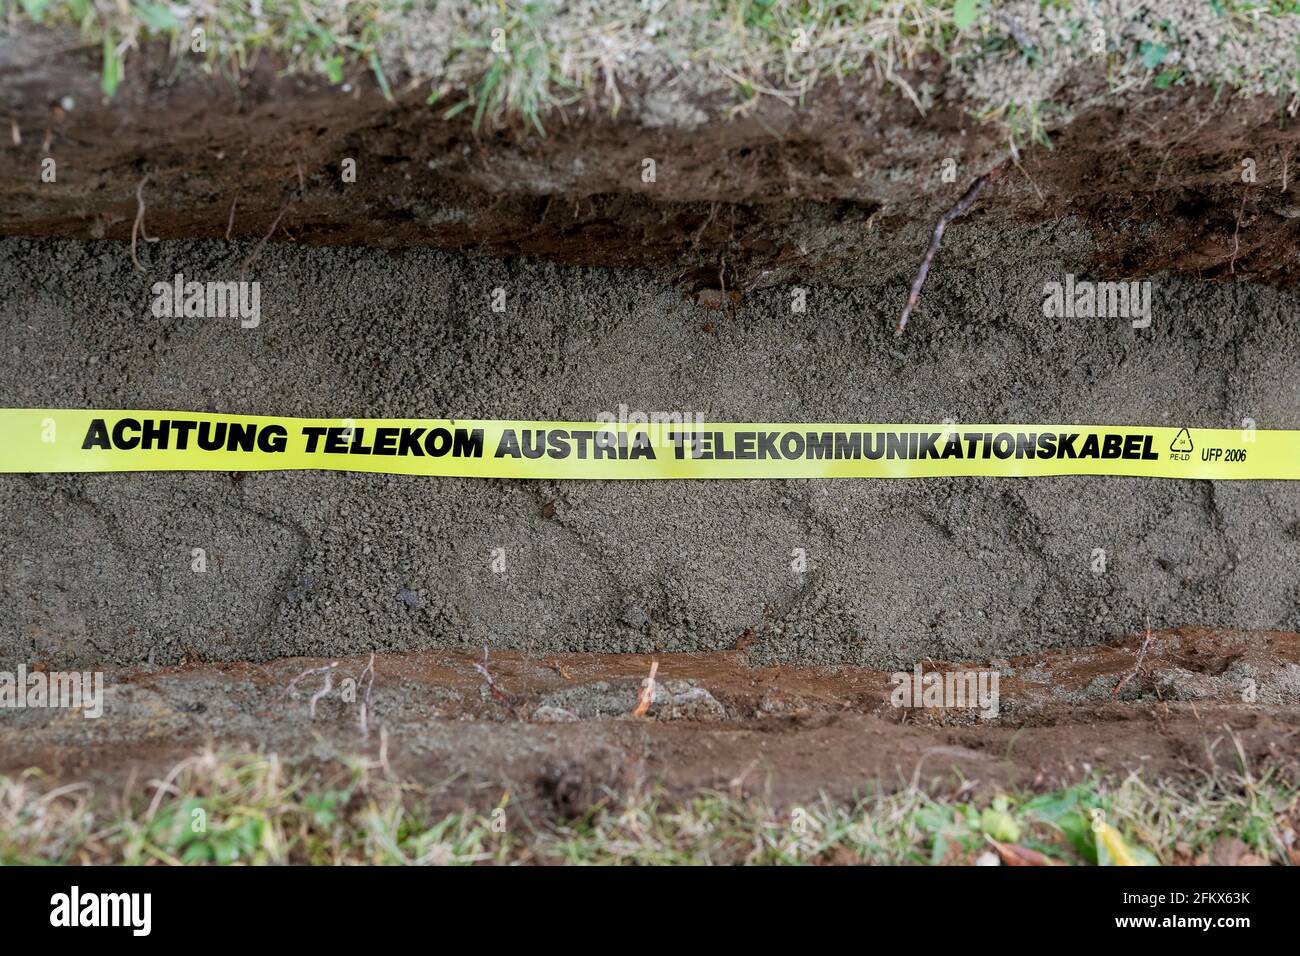 Ruban d'avertissement, à l'attention de Telekom Austria protection pour les câbles de télécommunication Banque D'Images